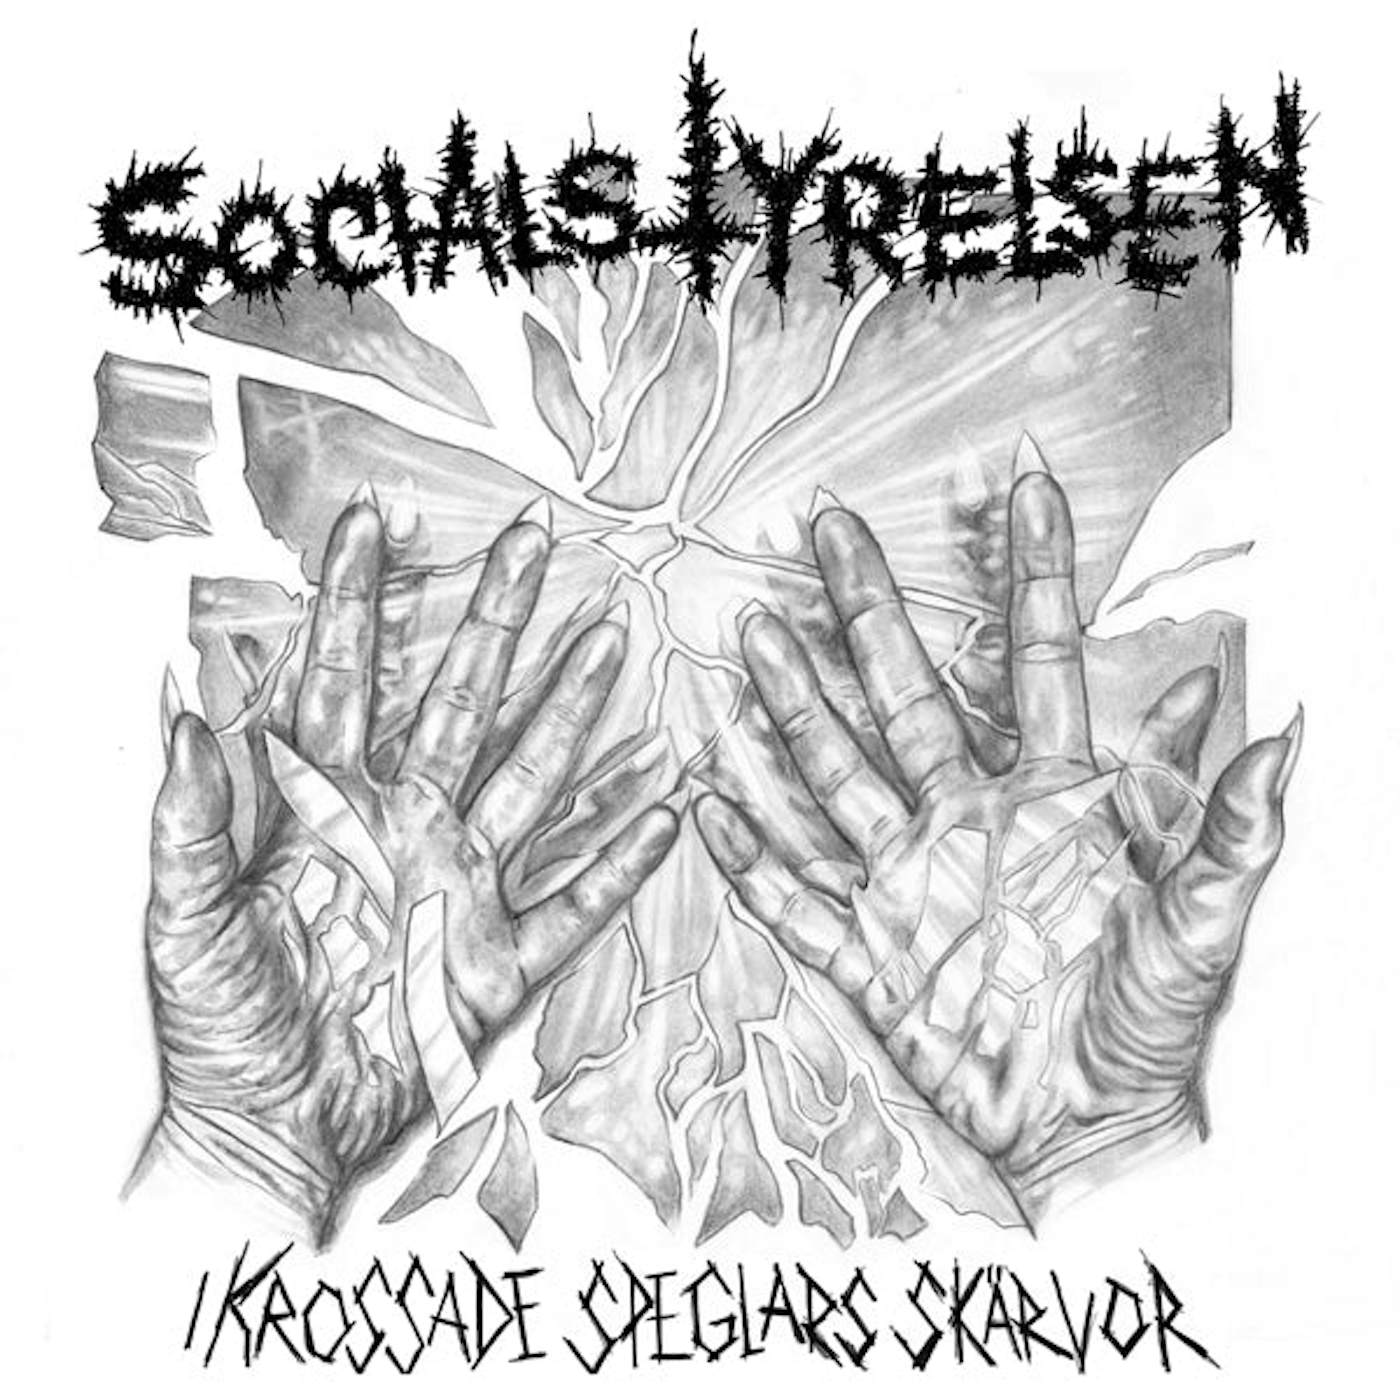 Socialstyrelsen LP - I Krossade Speglars Skärvor (Vinyl)